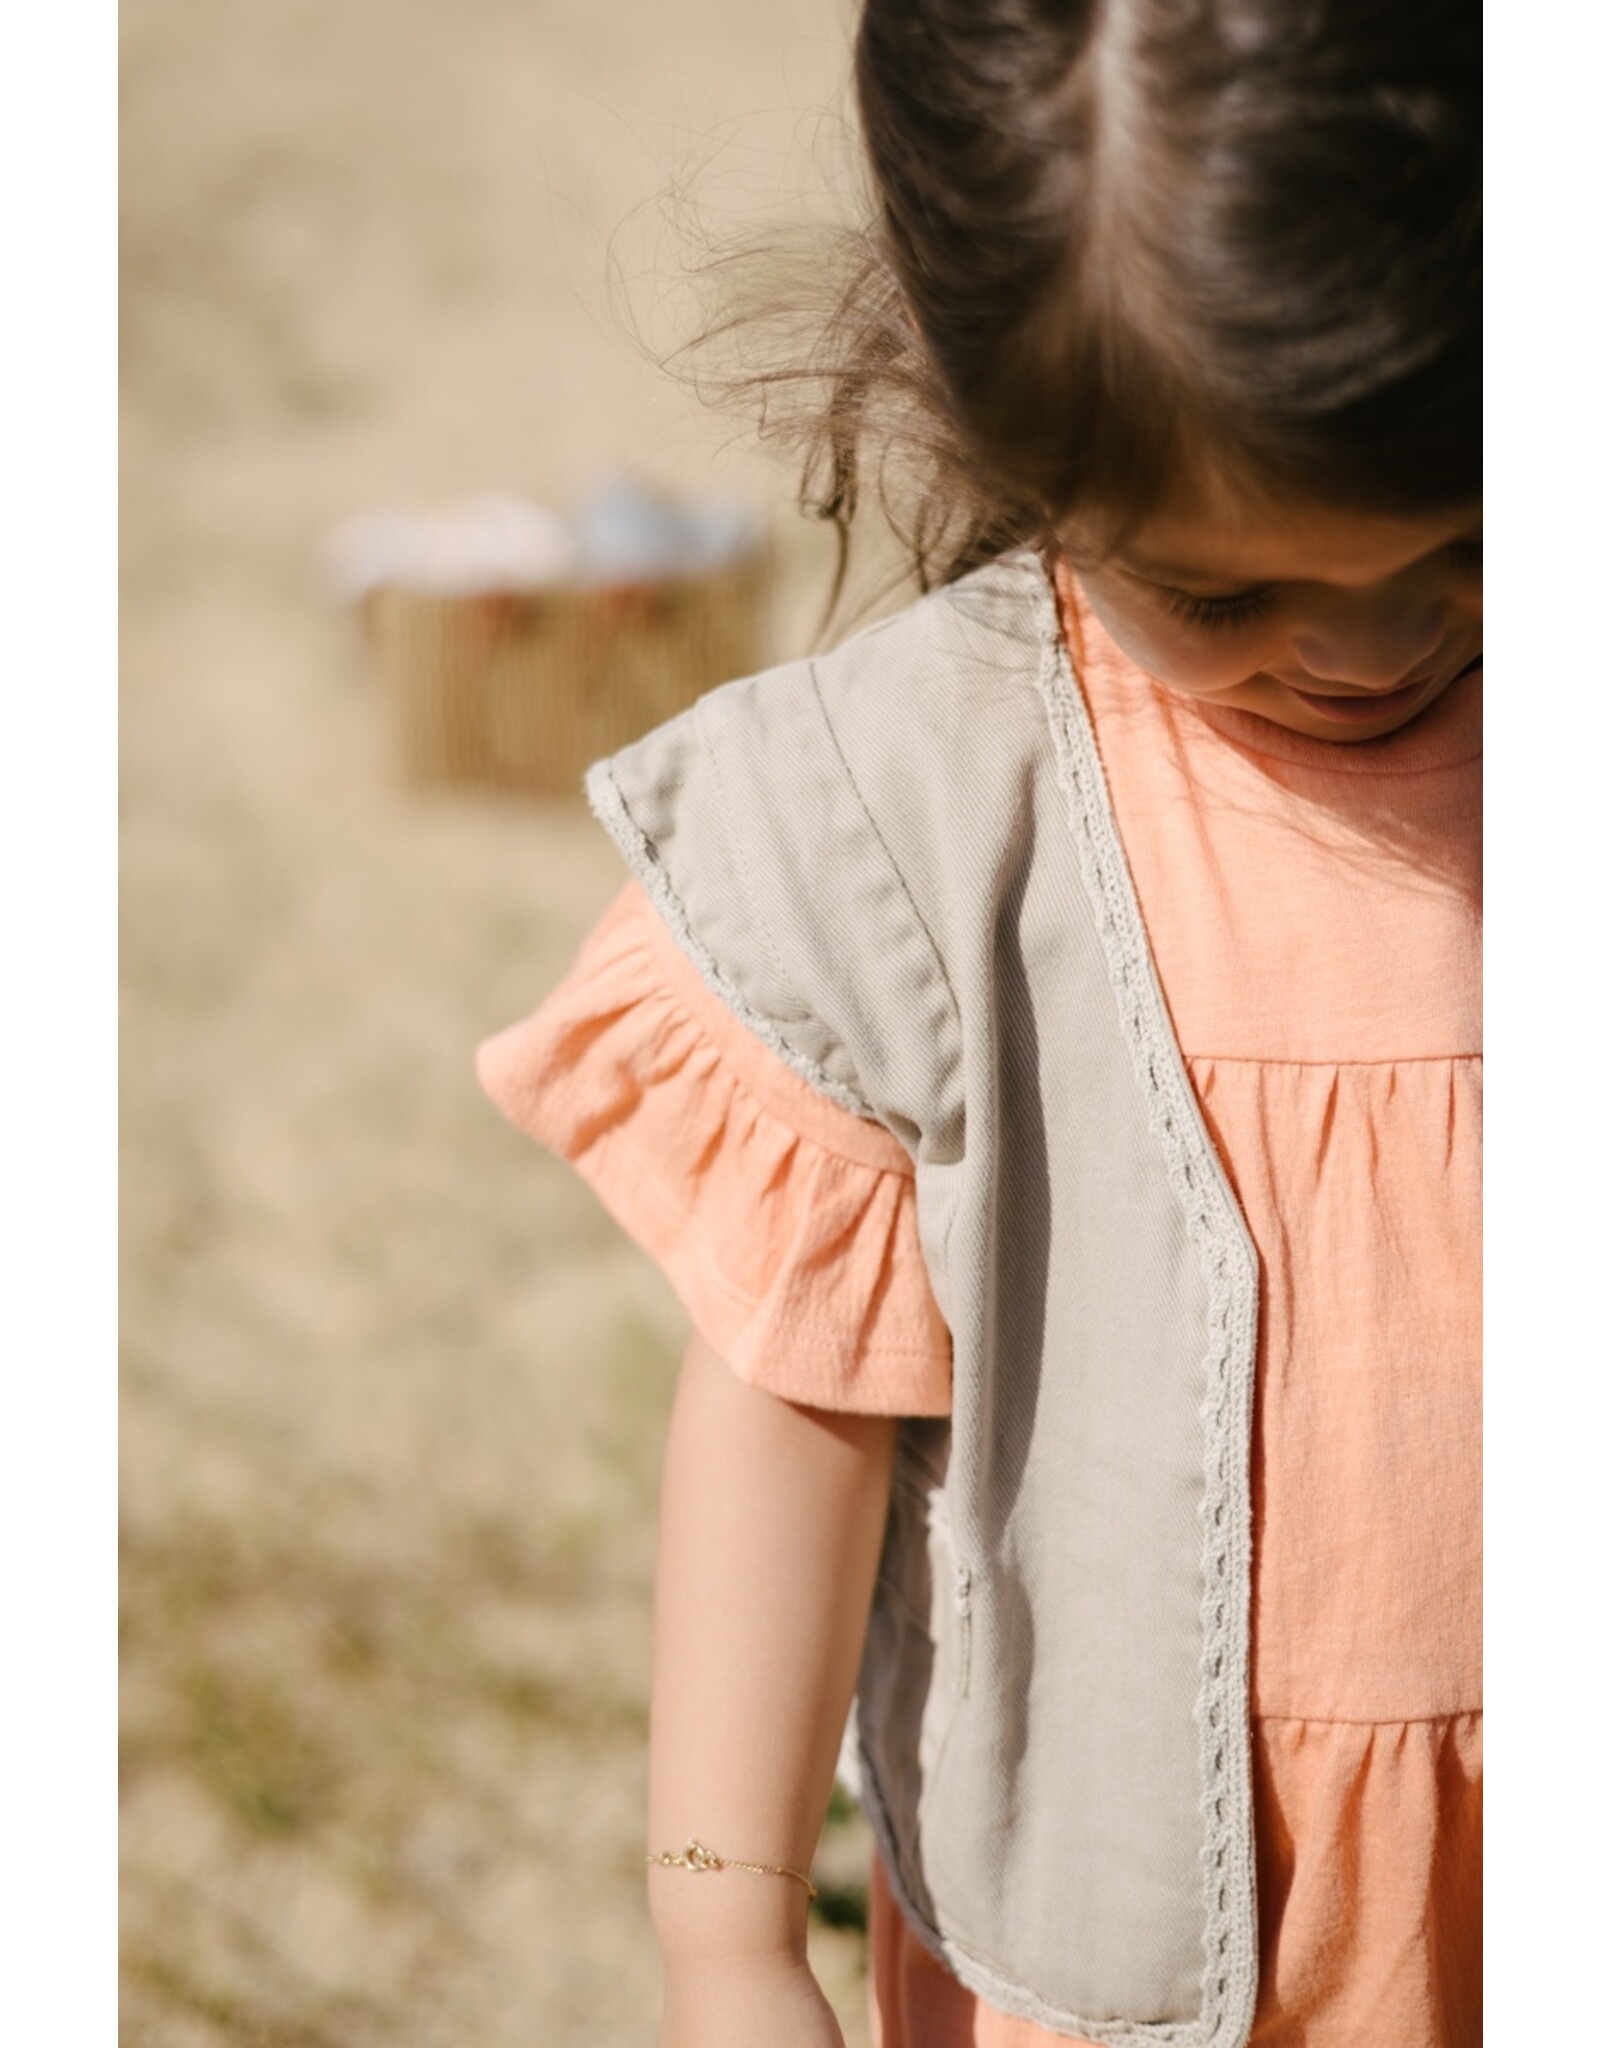 Levv Labels Little Girls Dress Peach MARENLS242